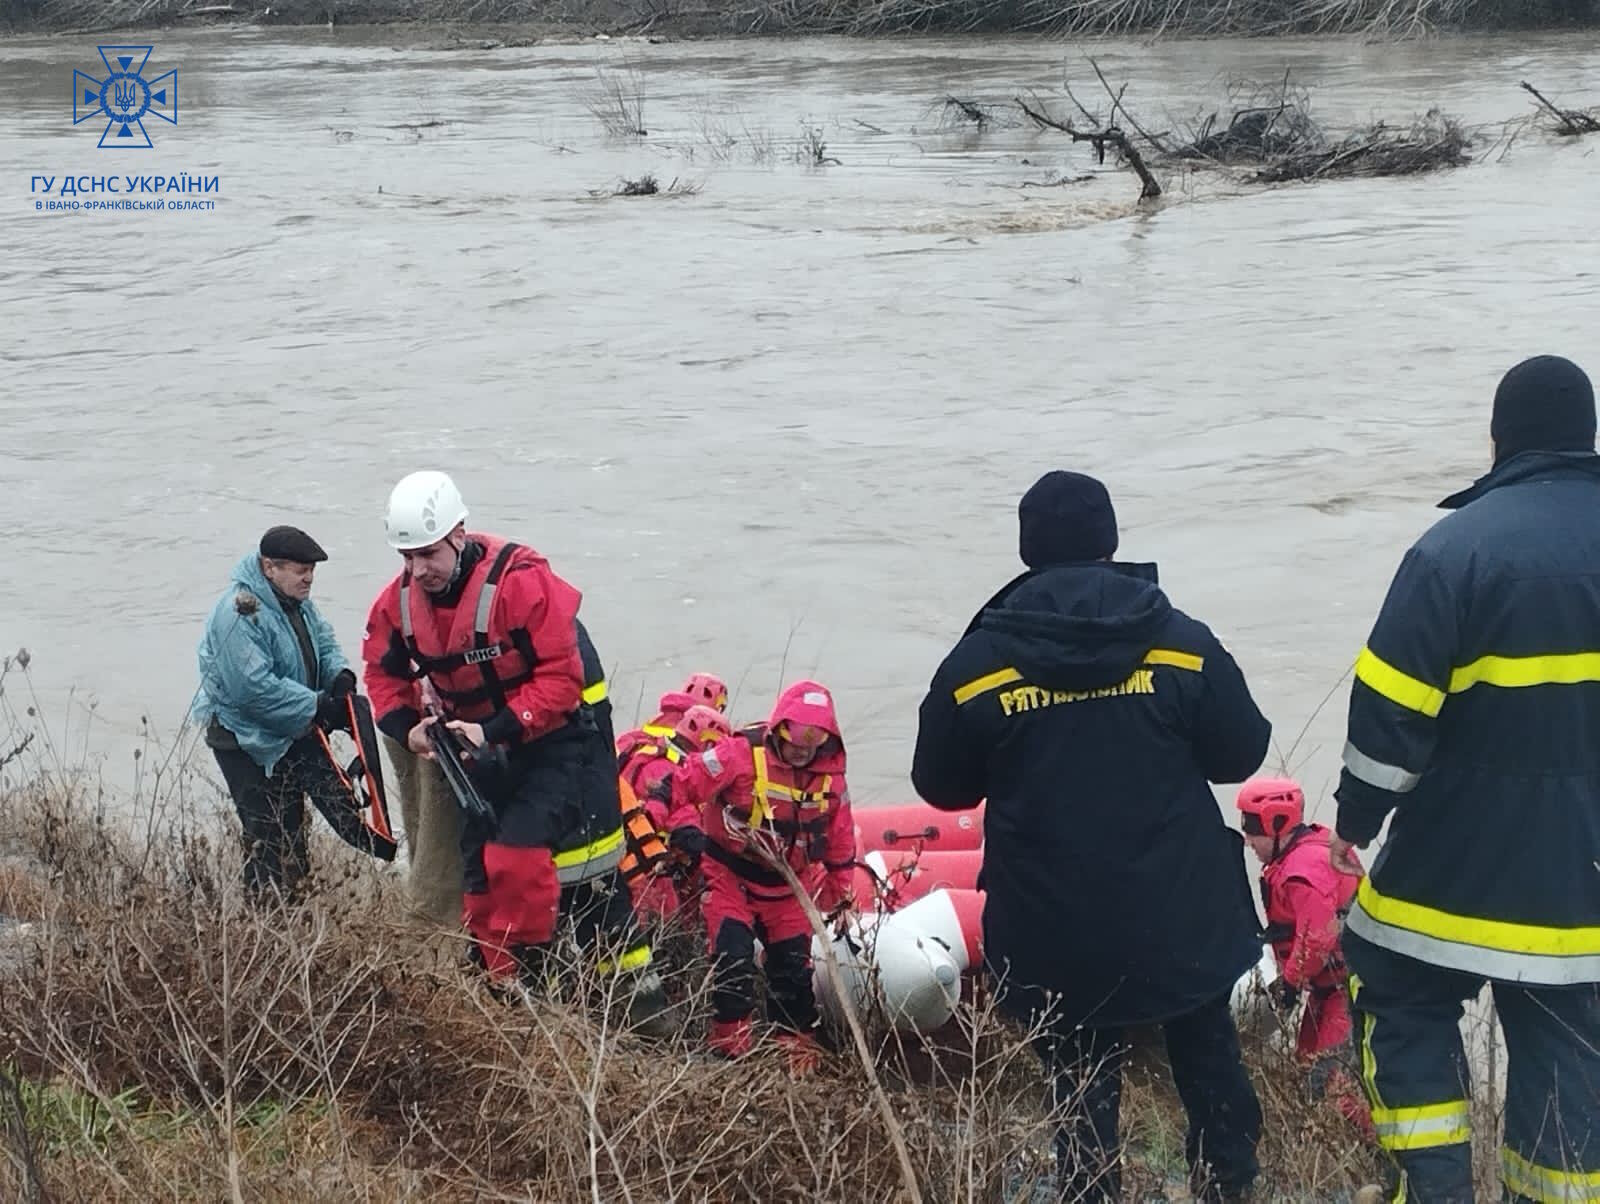 Закарпаття потерпає від підтоплень, на Прикарпатті рятувальники врятували людей з річки. Фото і відео